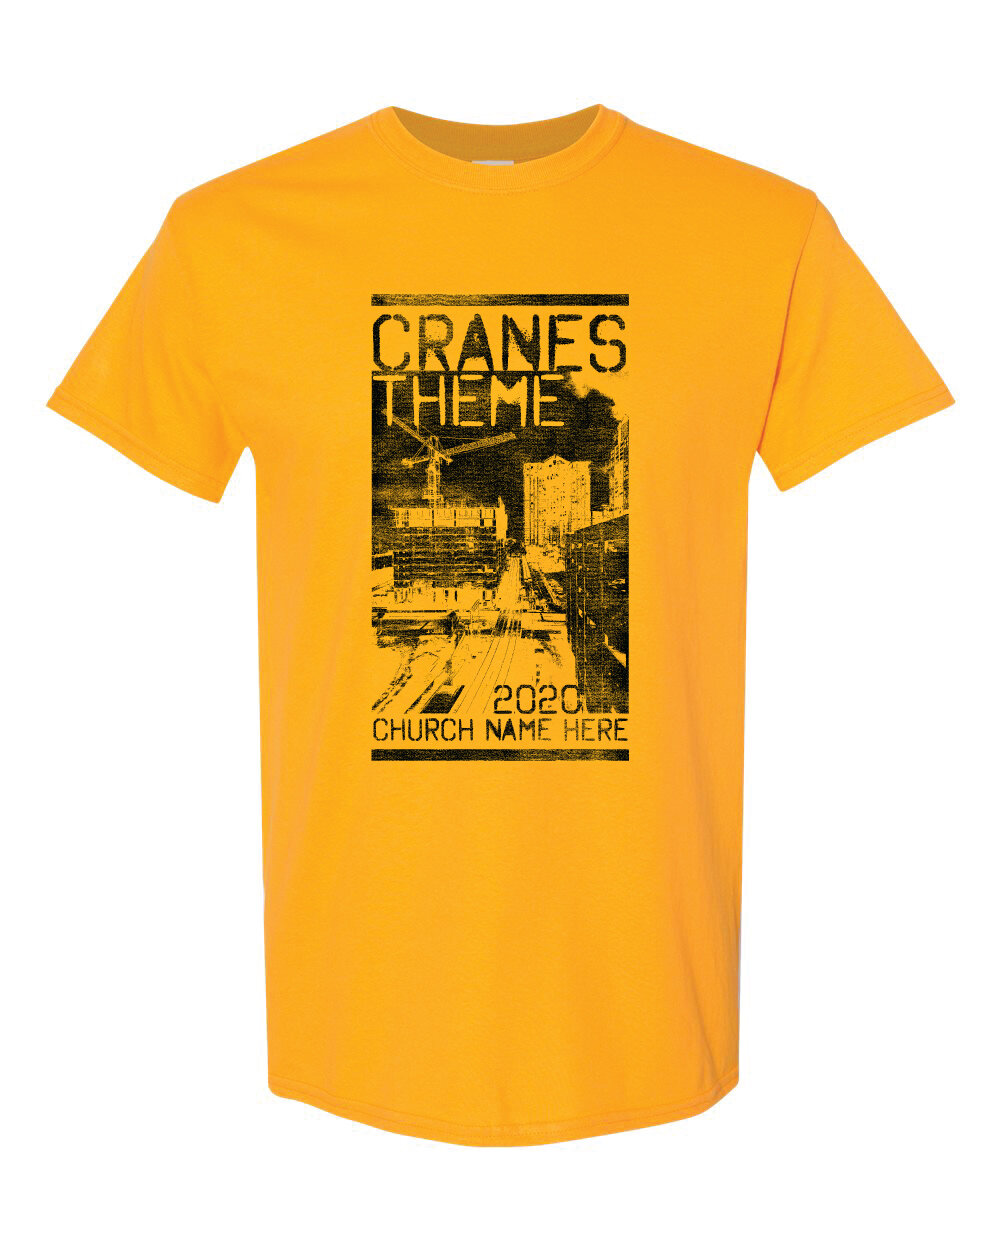 Crane 1-02.jpg